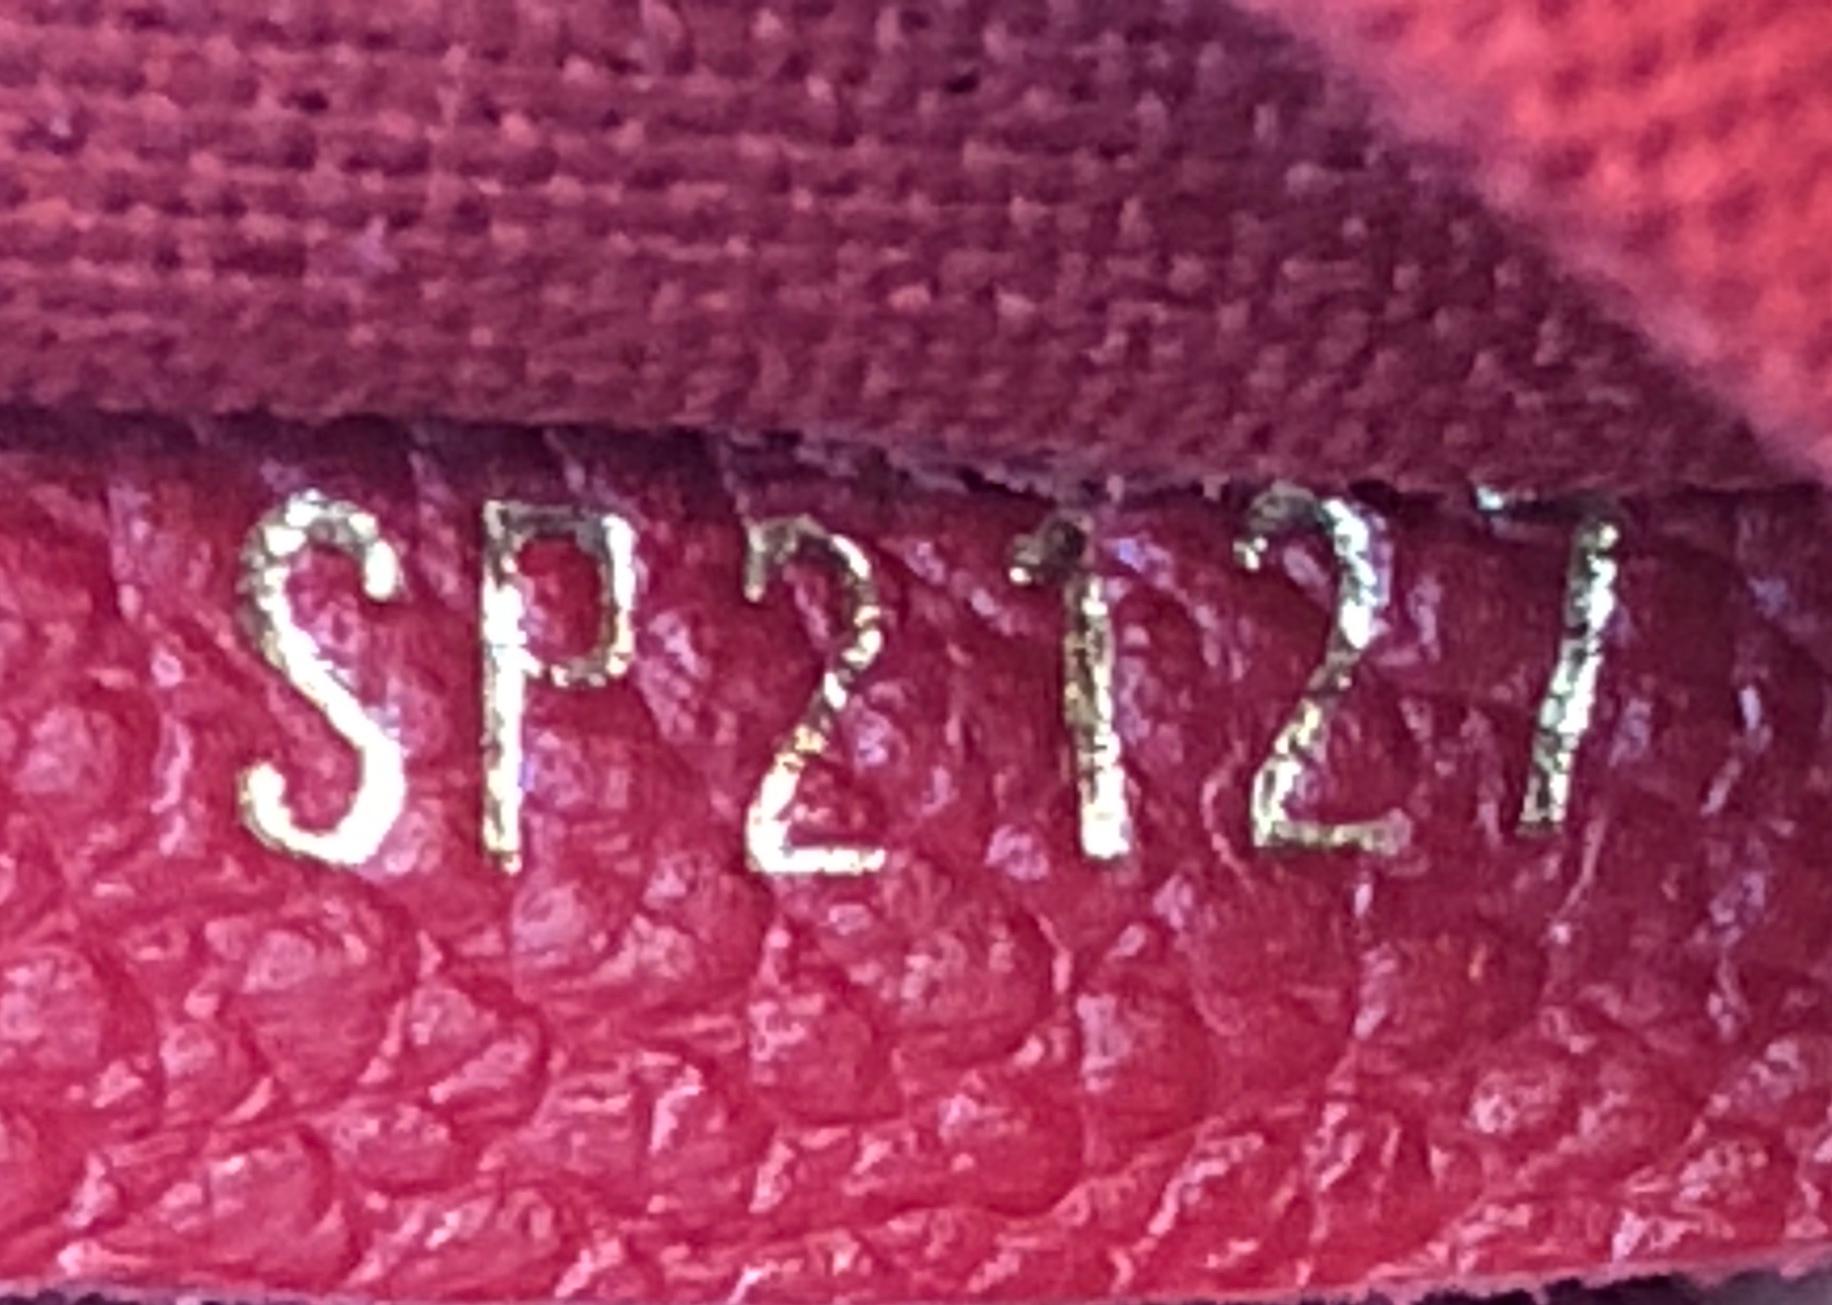 Louis Vuitton Vosges Handbag Whipstitch Monogram Empreinte Leather MM 1